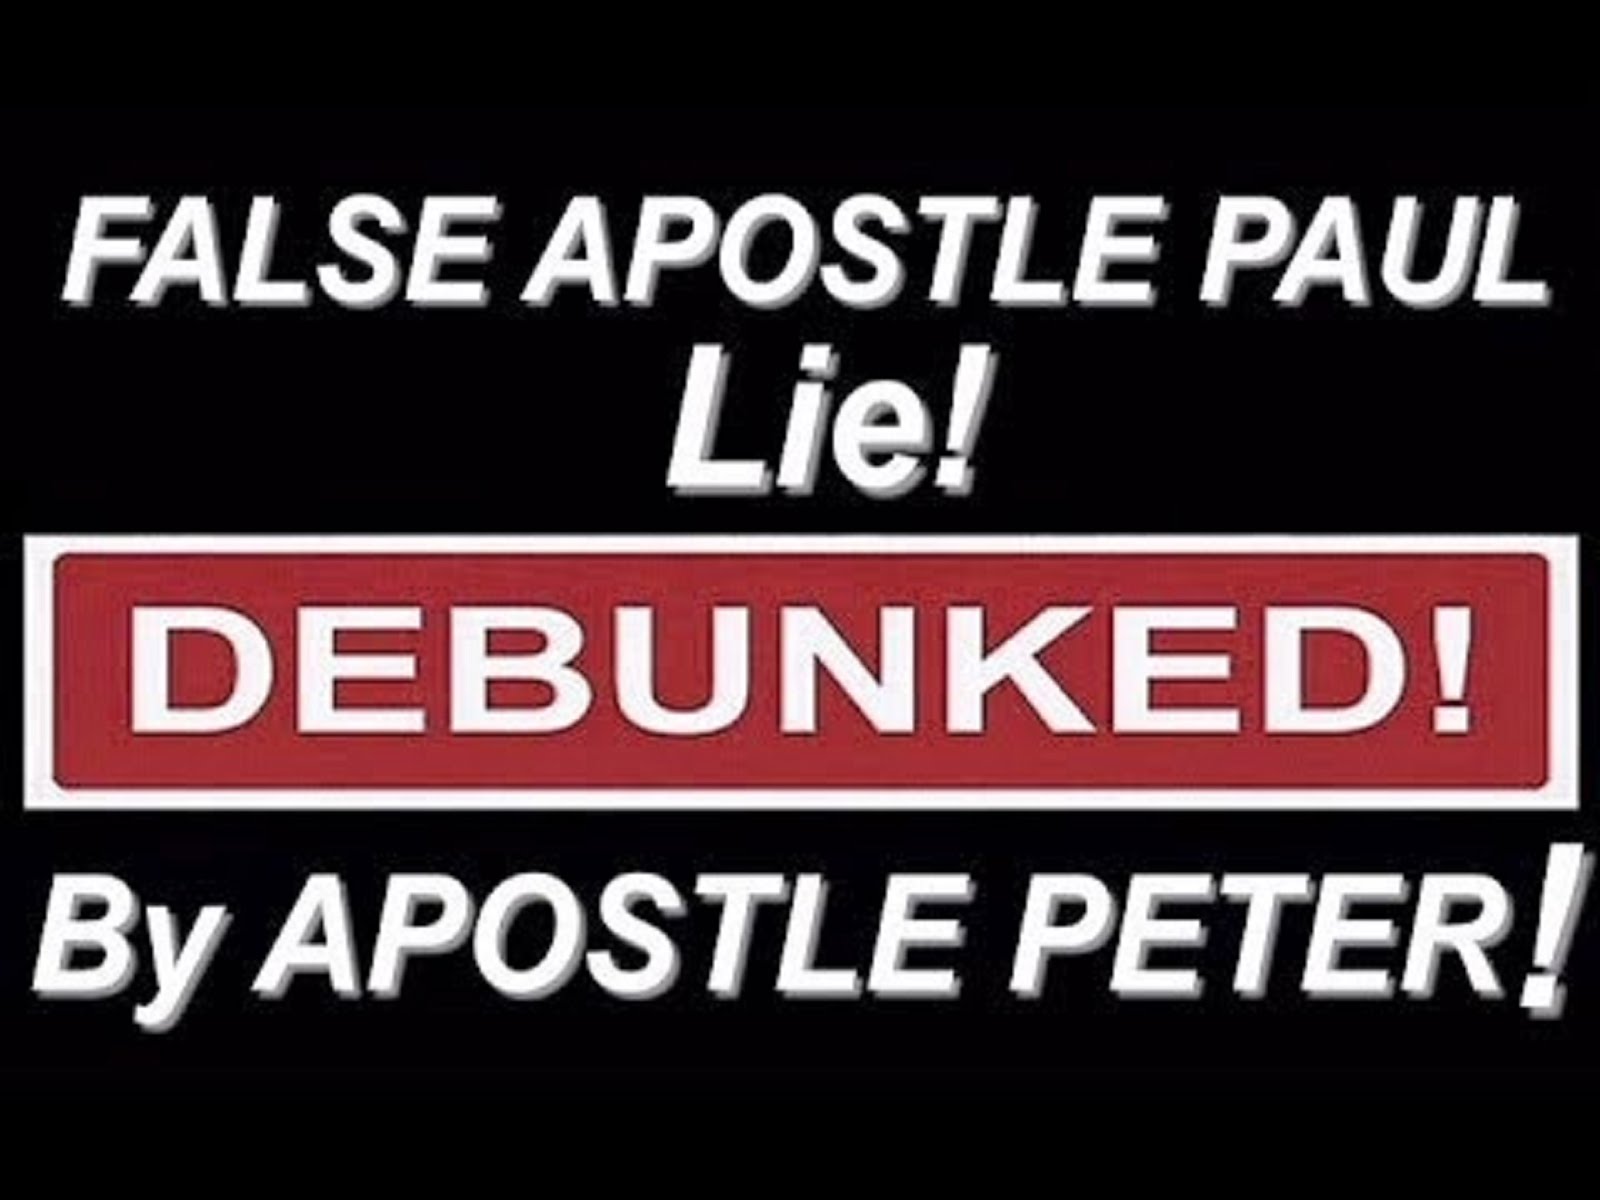 FALSE APOSTLE PAUL LIE!